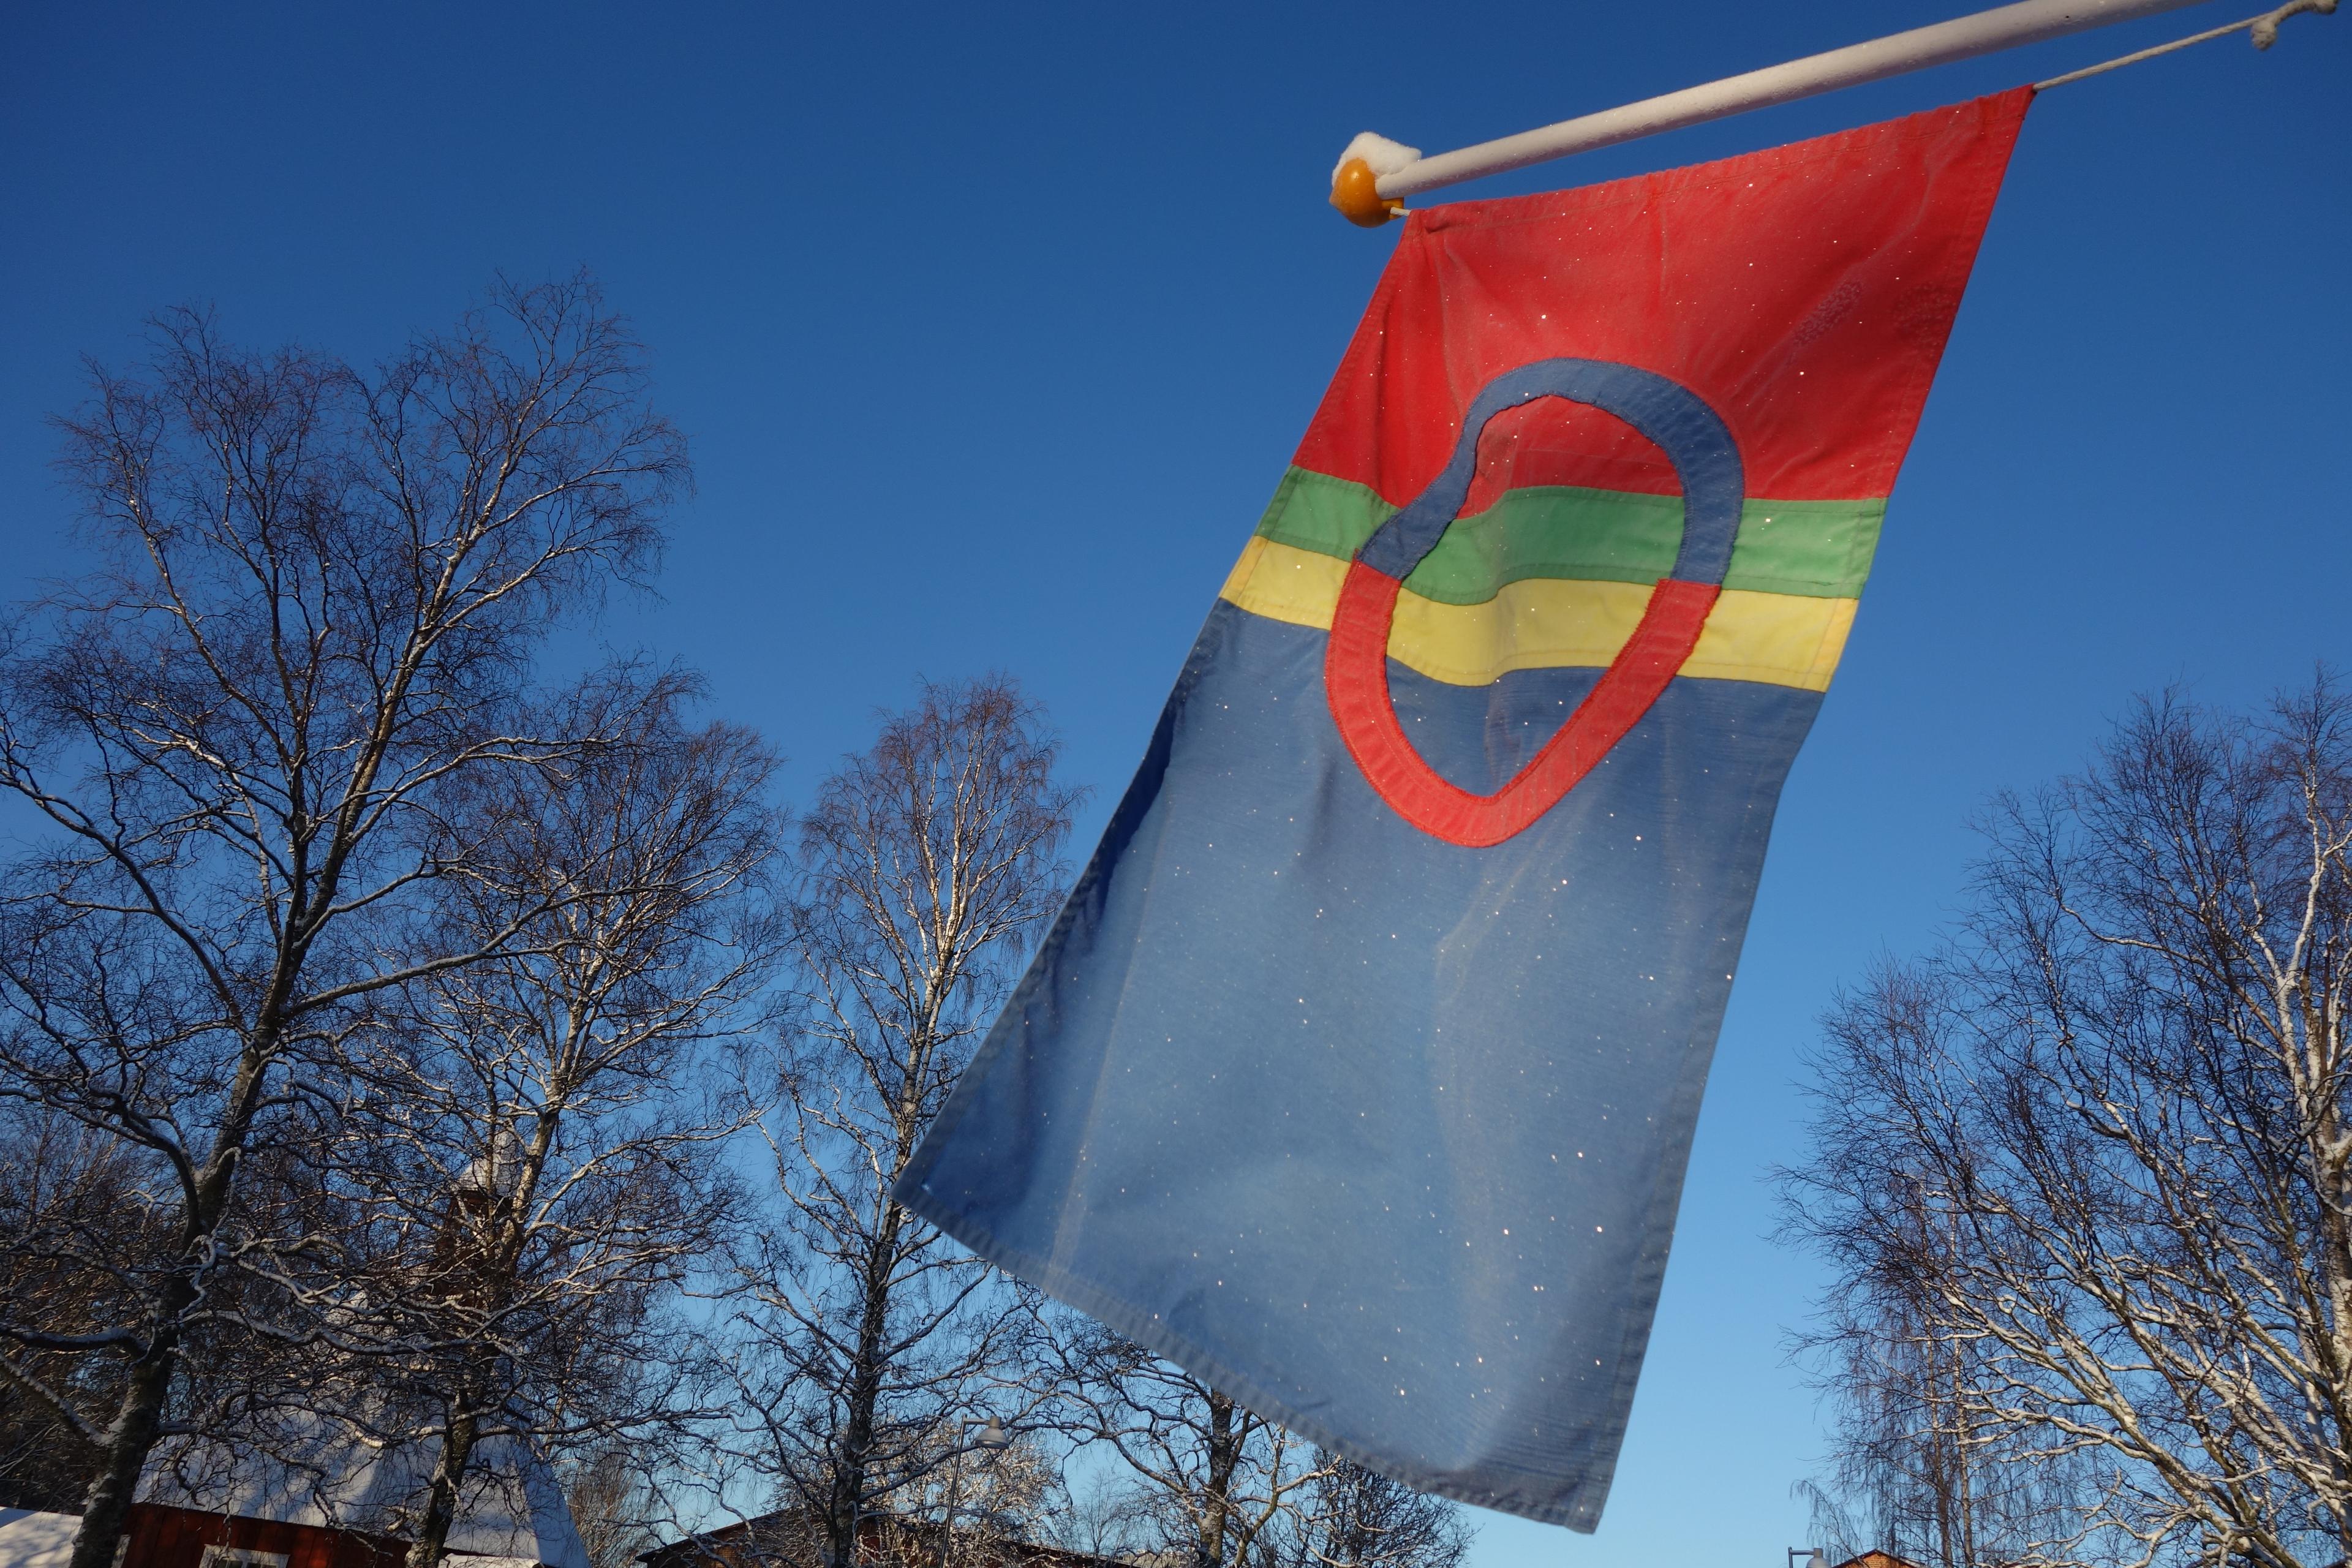 Lördag den 6 februari firas Samefolkets dag. Den samiska flaggan i de traditionella färgerna visar var dagen uppmärksammas. (Foto: Eva Sagerfors/Epoch Times Sverige)